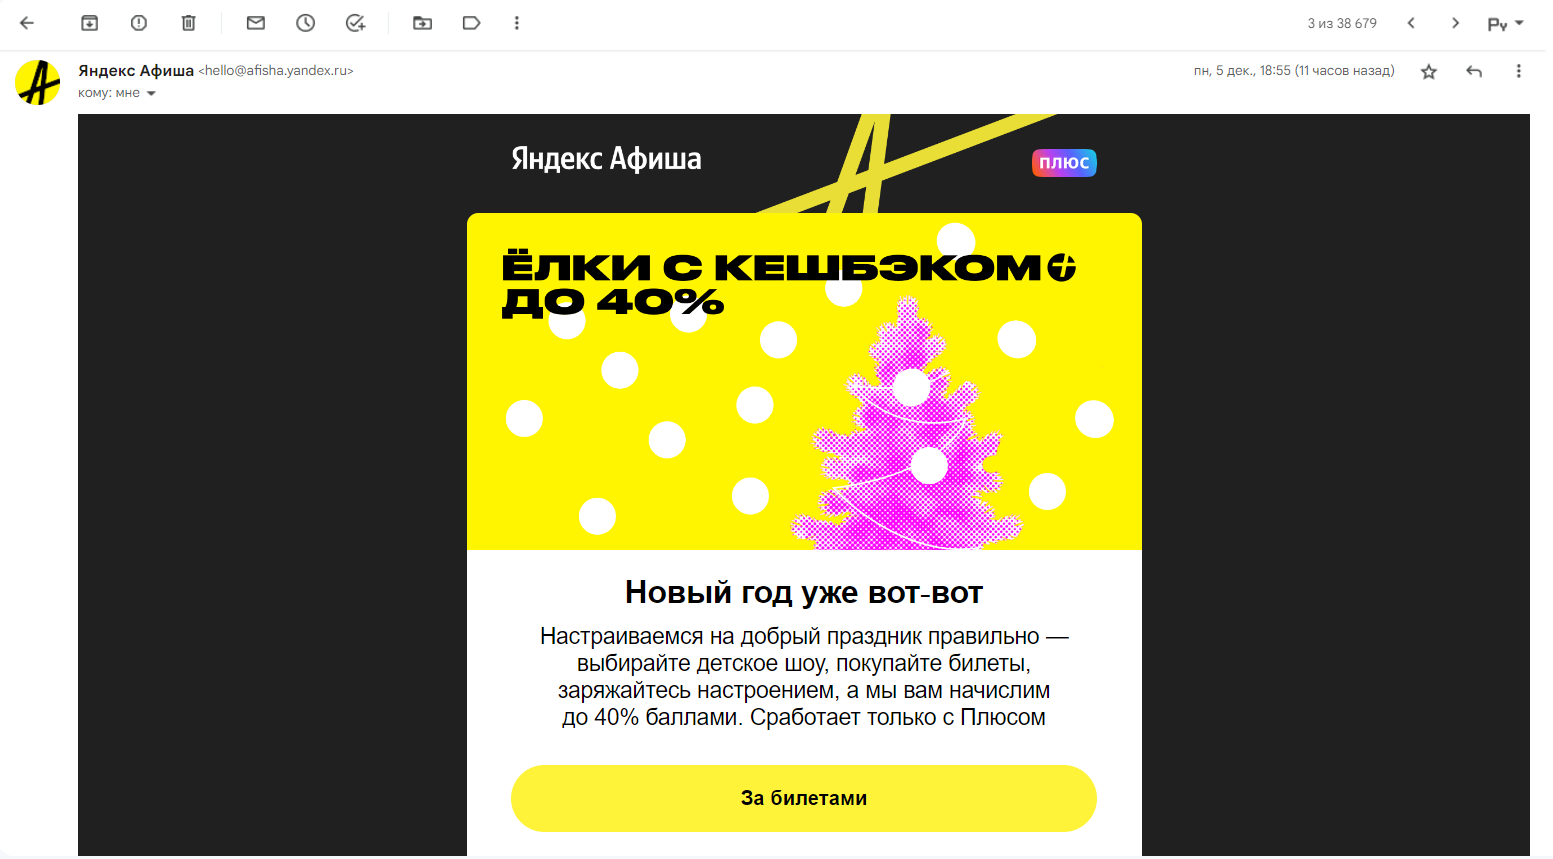 Узнаваемый черно-желтый дизайн Яндекс.Афиши, а новогодняя тематика поддерживается елочкой на баннере